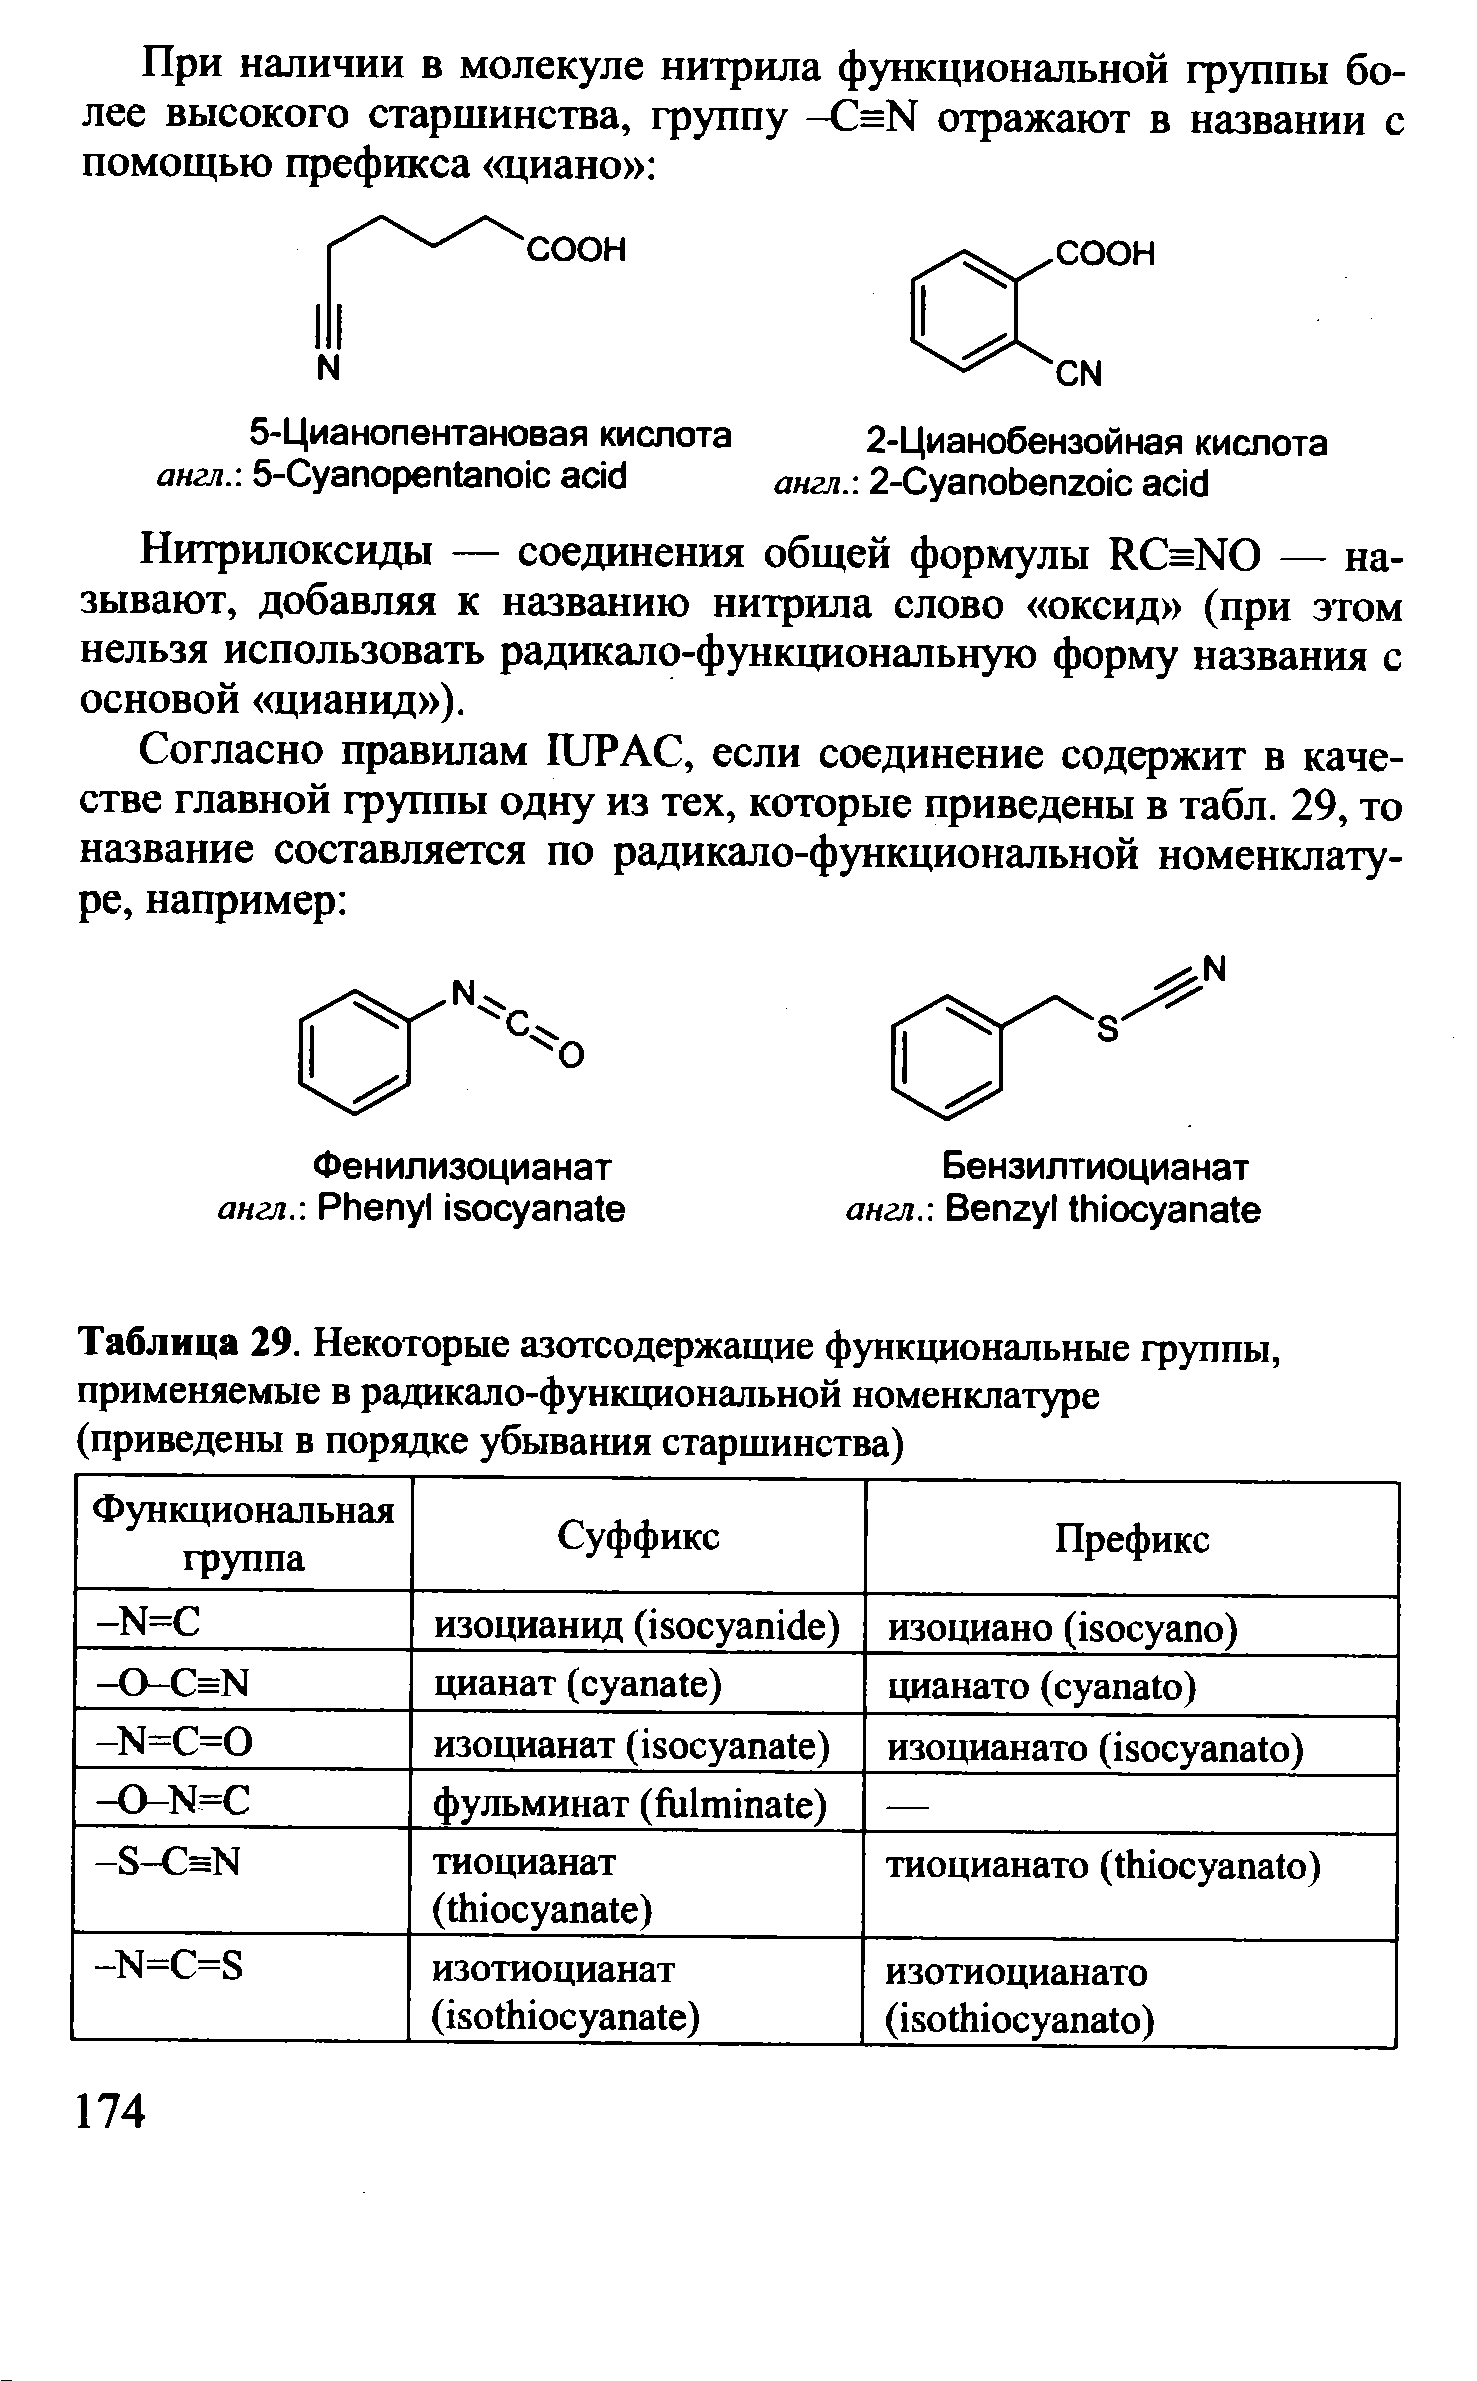 Нитрилоксиды — соединения общей формулы R sNO — называют, добавляя к названию нитрила слово оксид (при этом нельзя использовать радикало-функциональную форму названия с основой щианид ).